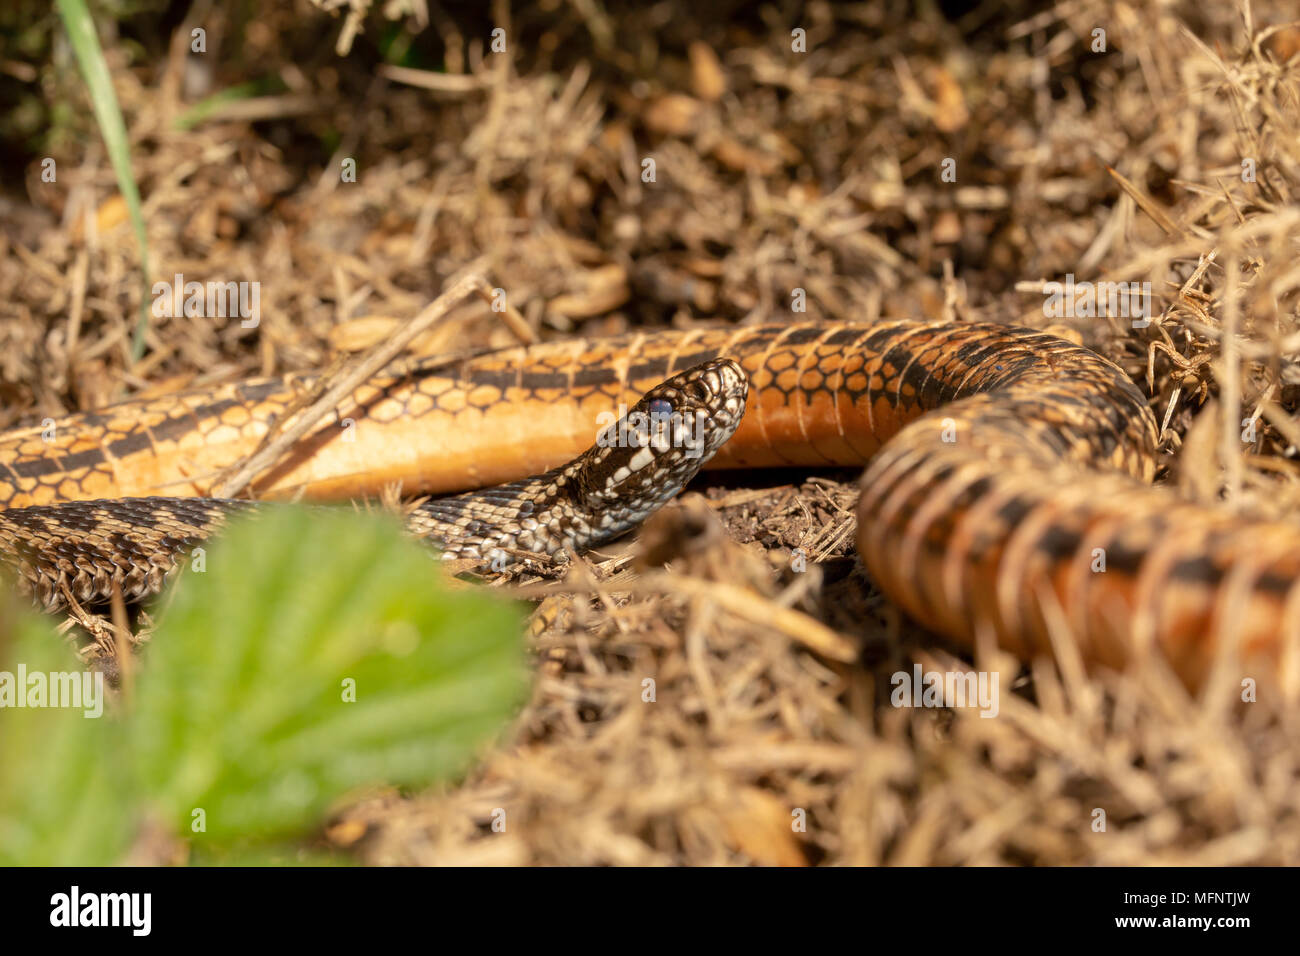 Sumador europeo investiga una serpiente de juguete en una reserva natural de landas Foto de stock